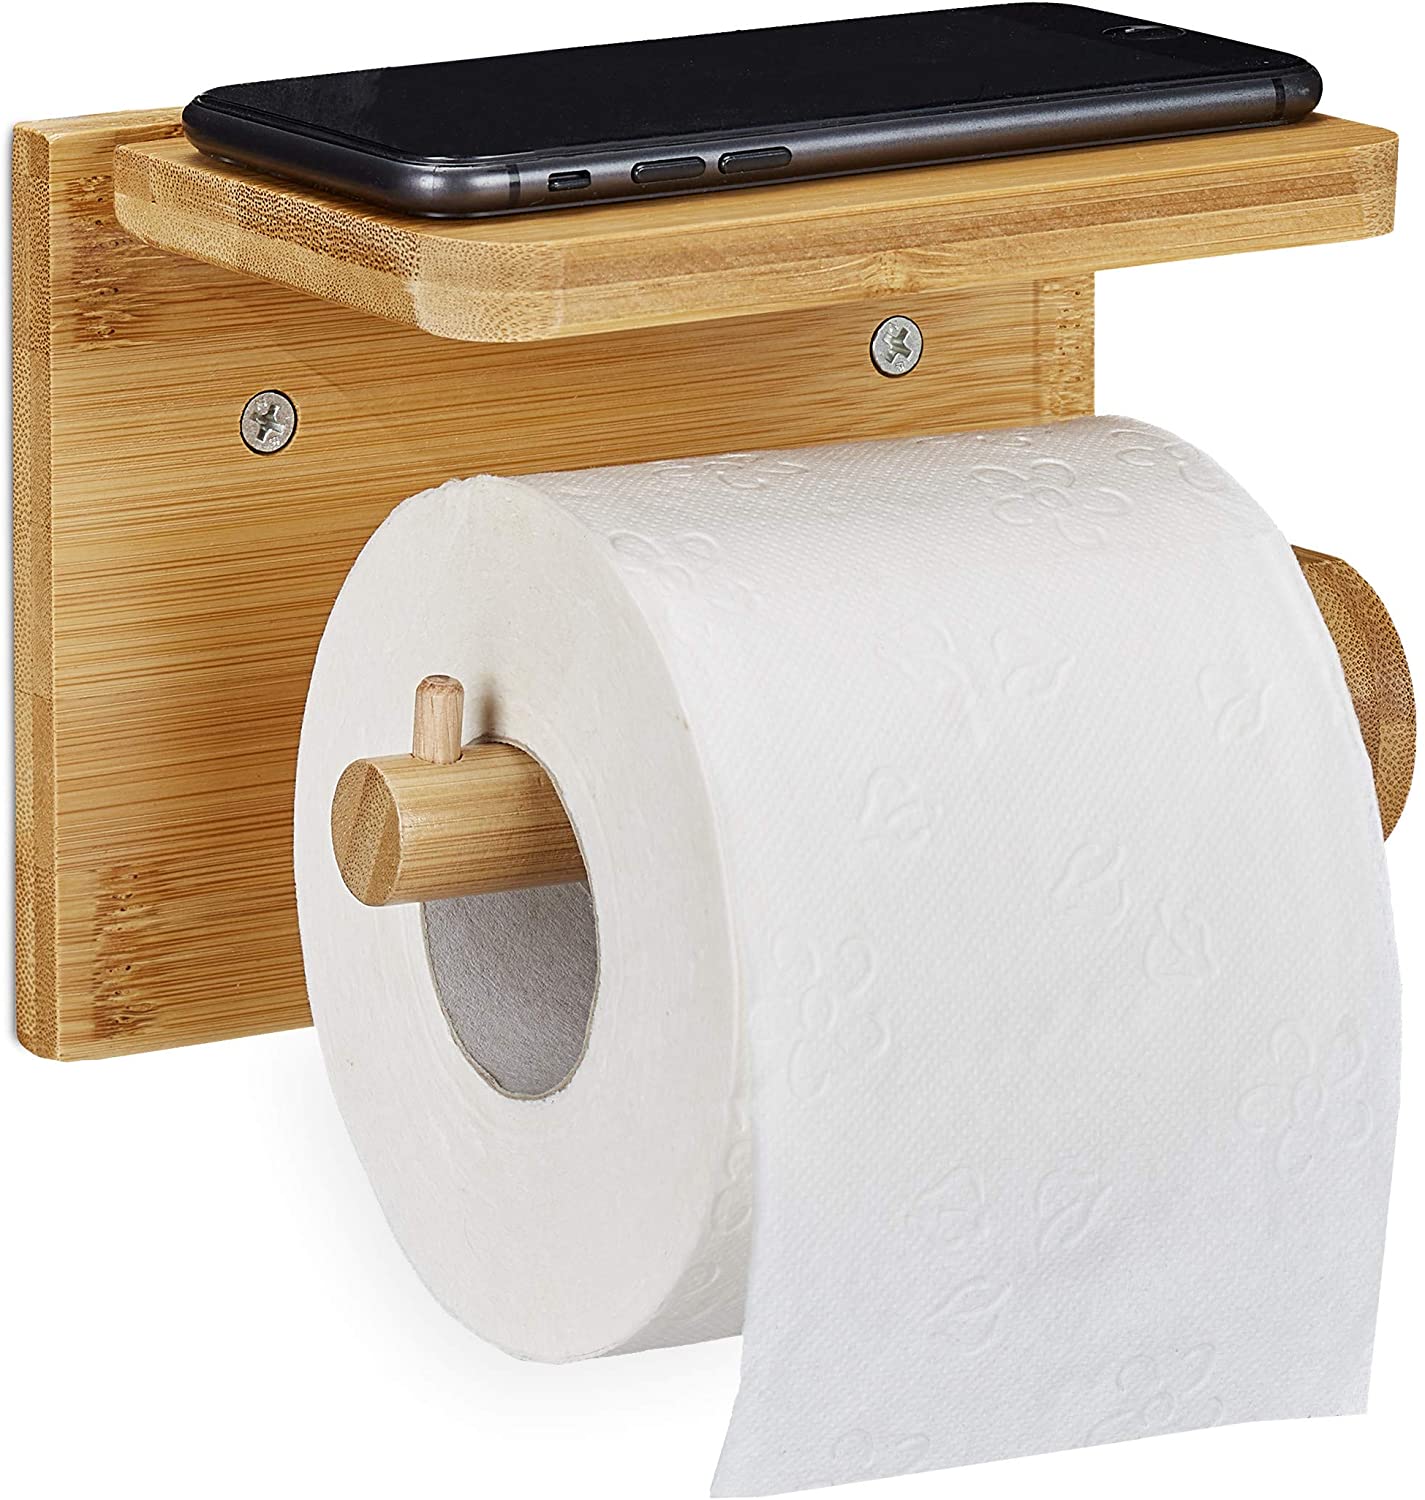 Relaxdays Toilettenpapierhalter Mit Ablage, Für Handy & Feuchttücher, Bambu